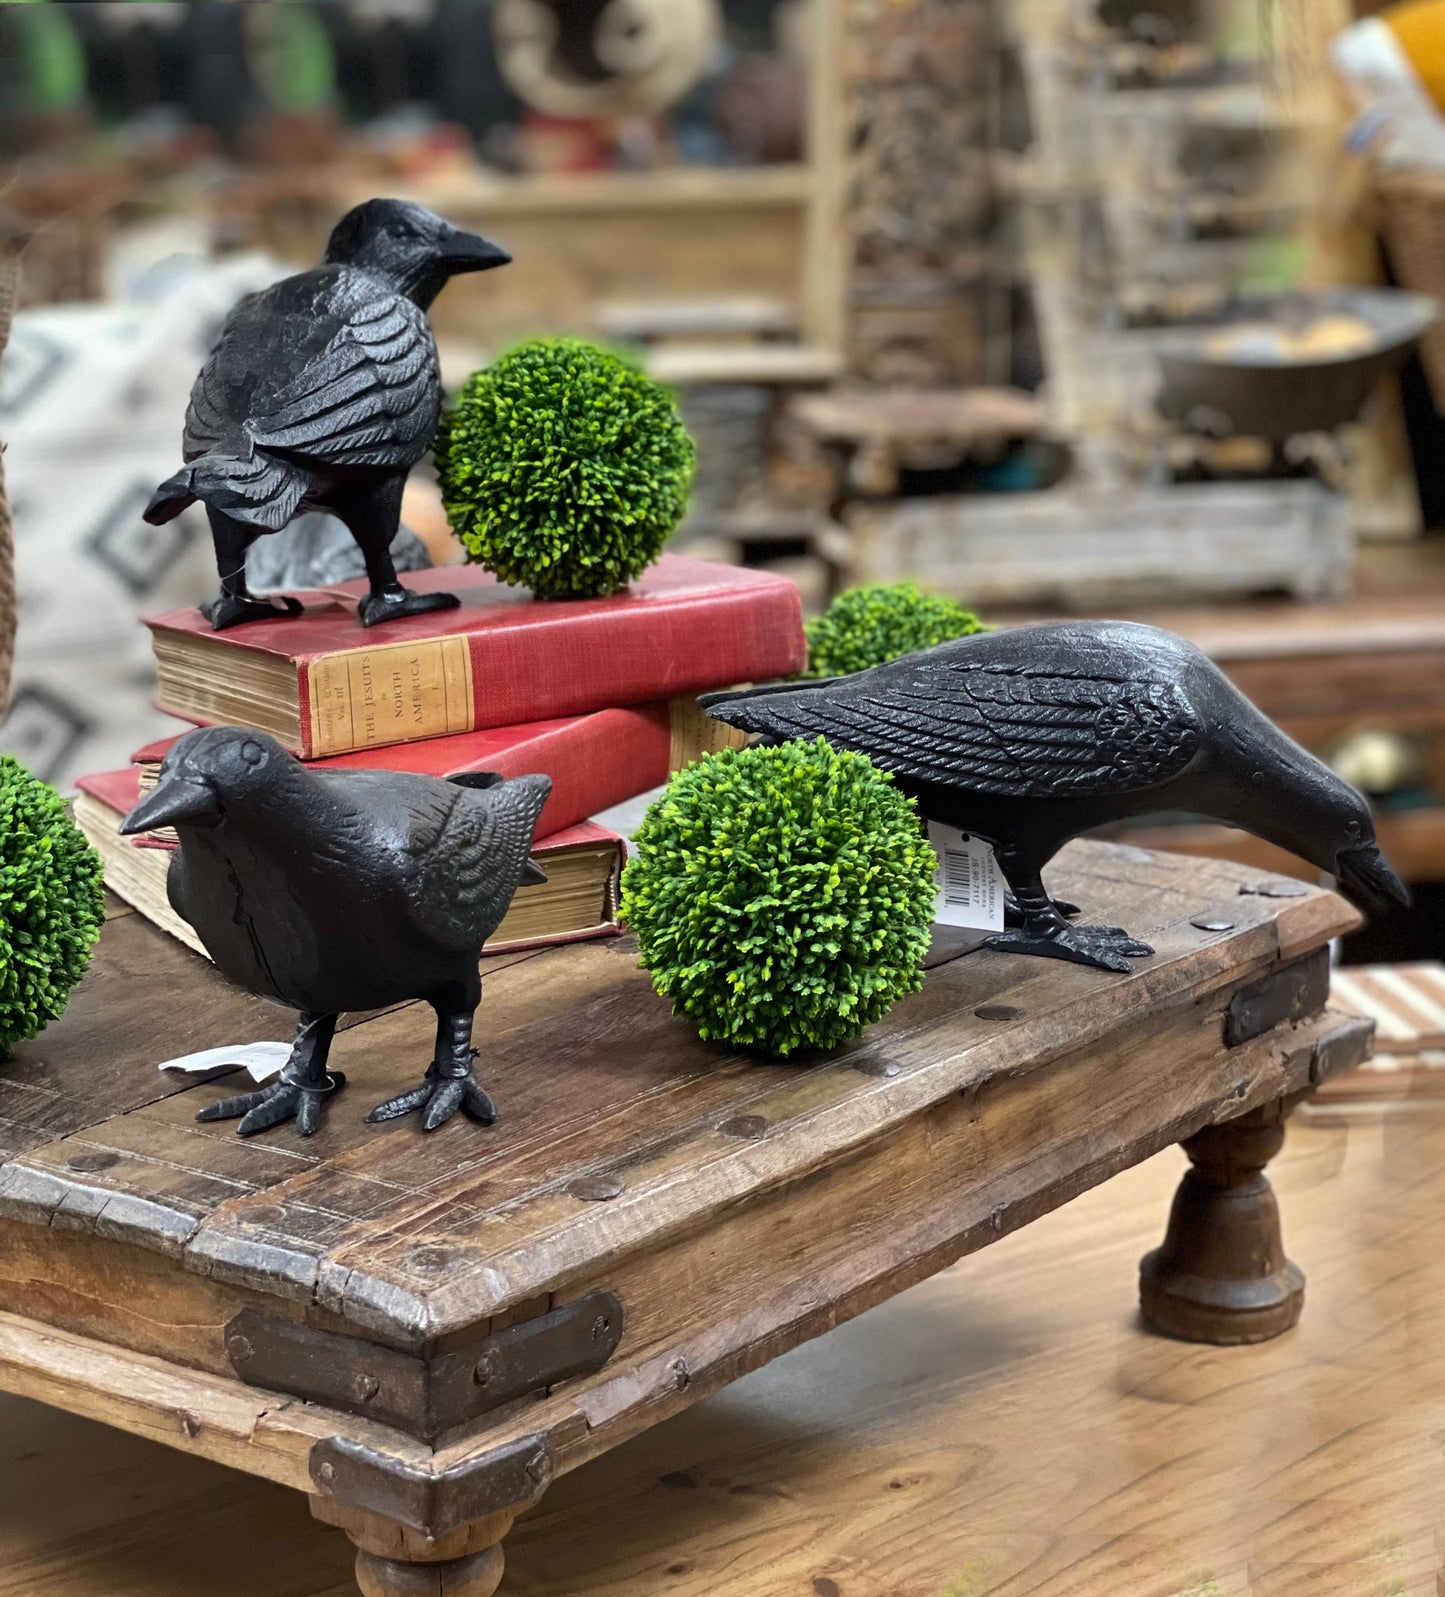 Statue de jardin de corbeau en fonte avec tête à côté, statuette de corbeau noir